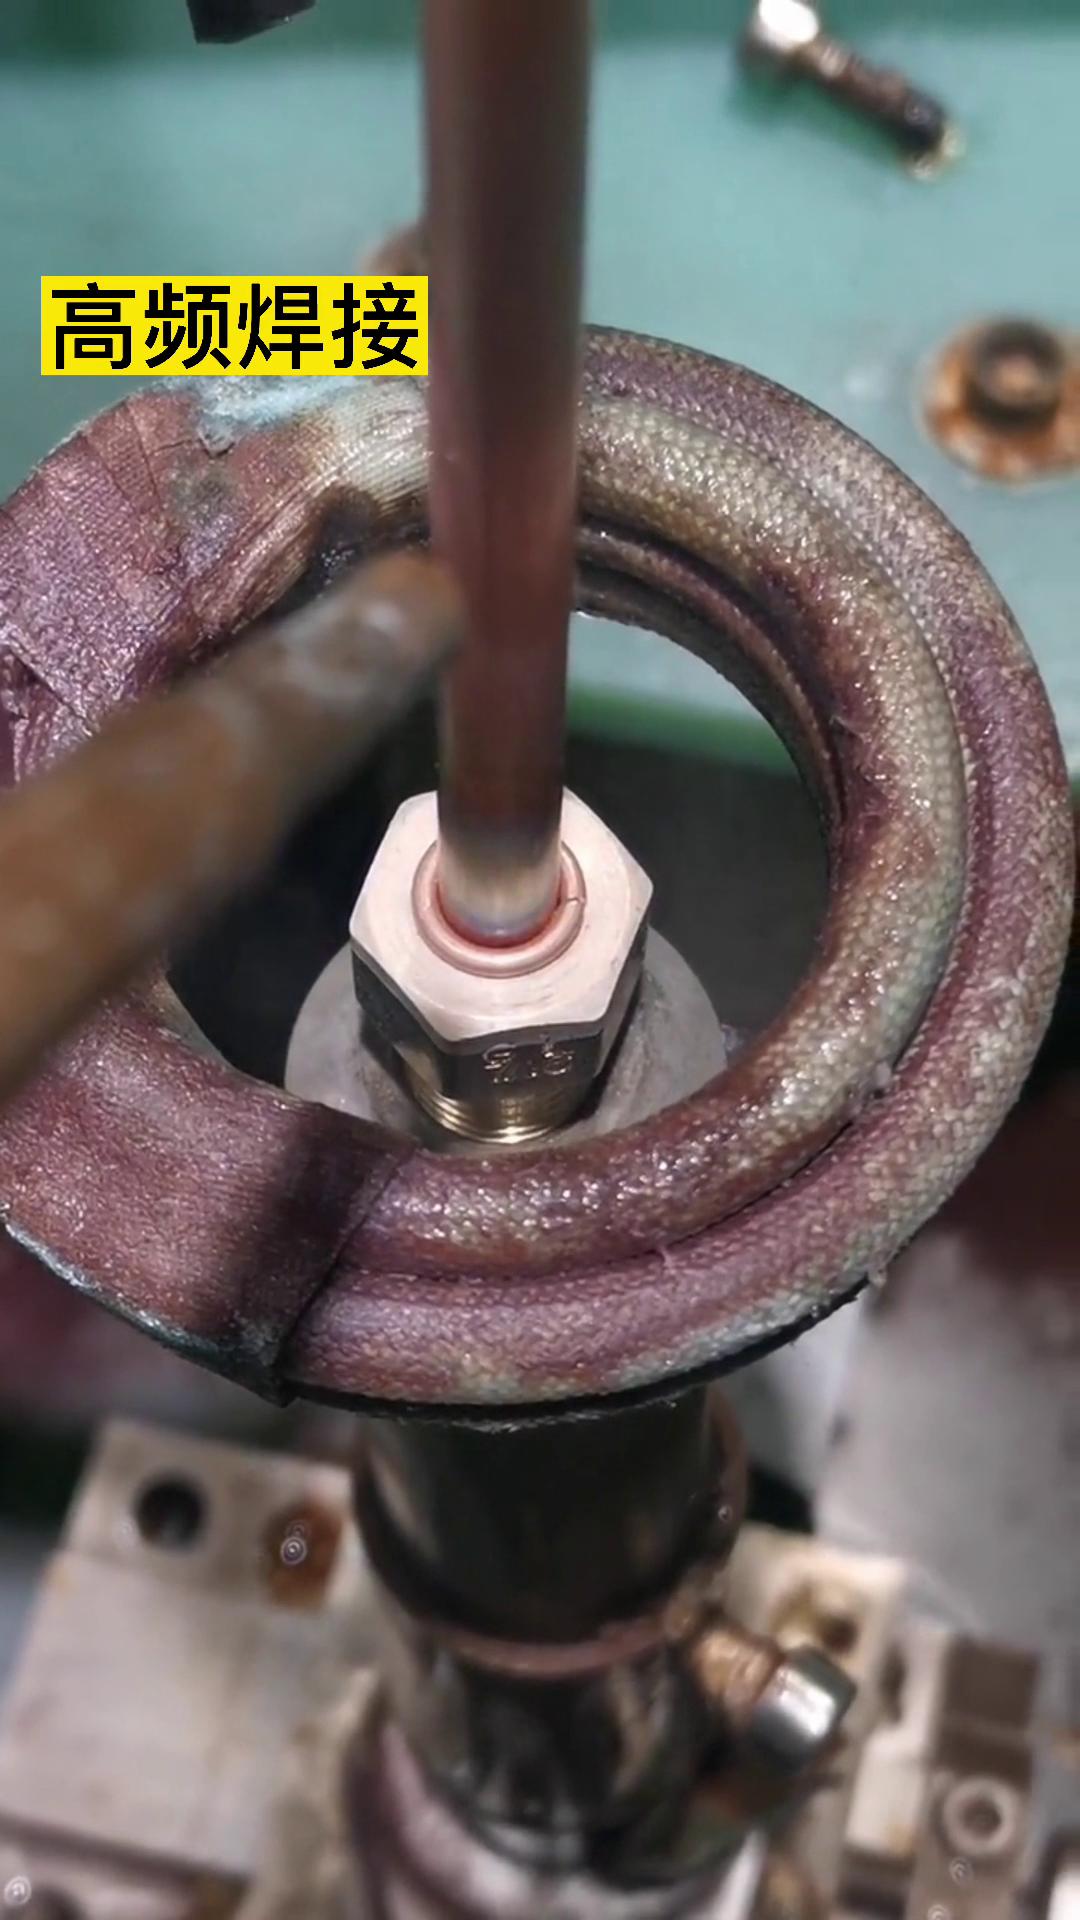 高频钎焊机 铜管和铜螺母焊接过程